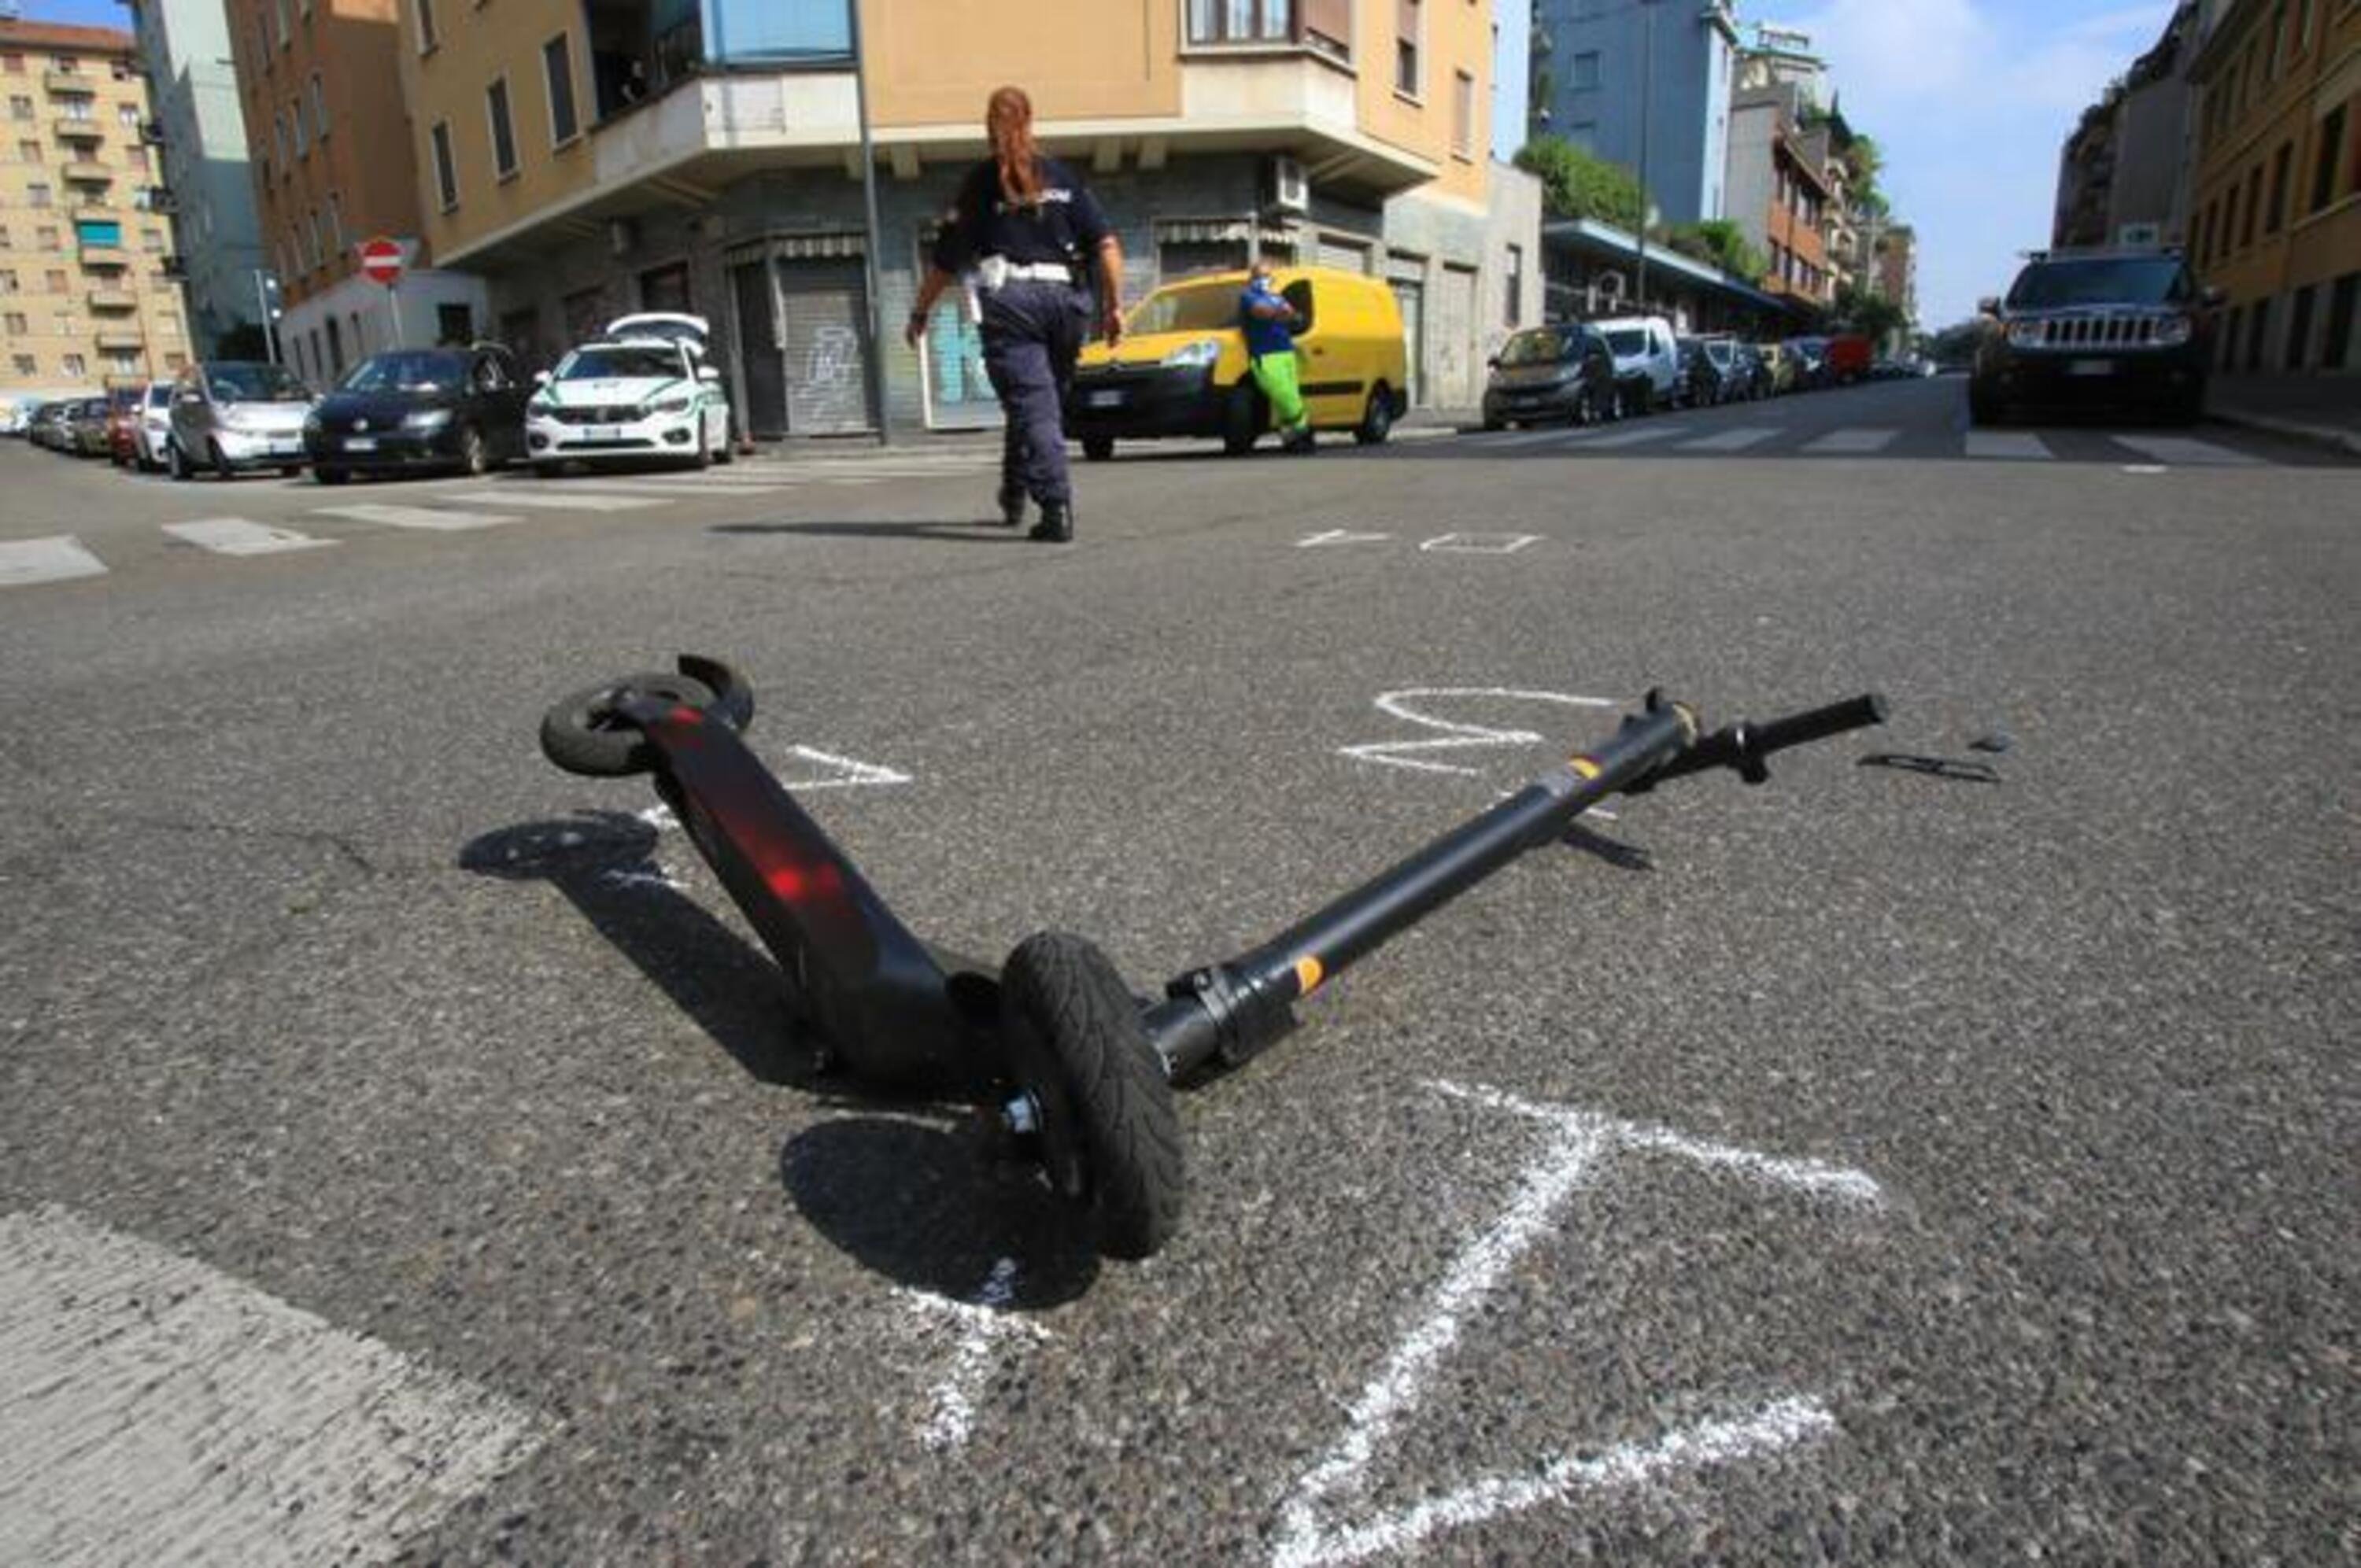 Incidenti e caos sulle strade delle grandi citt&agrave;, Servono nuove regole o solo rispetto?